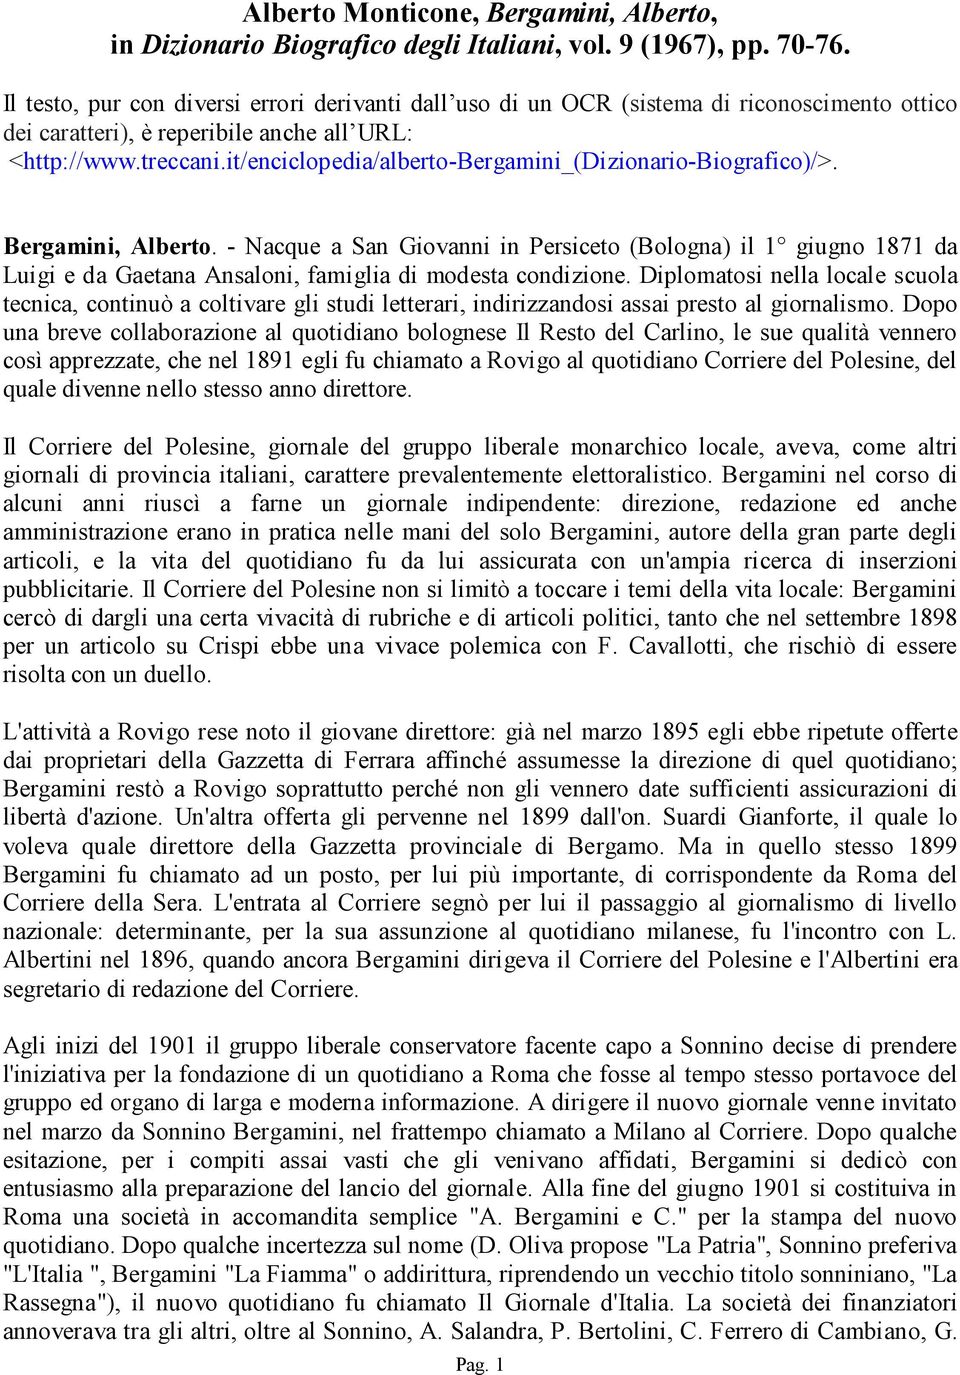 it/enciclopedia/alberto-bergamini_(dizionario-biografico)/>. Bergamini, Alberto.